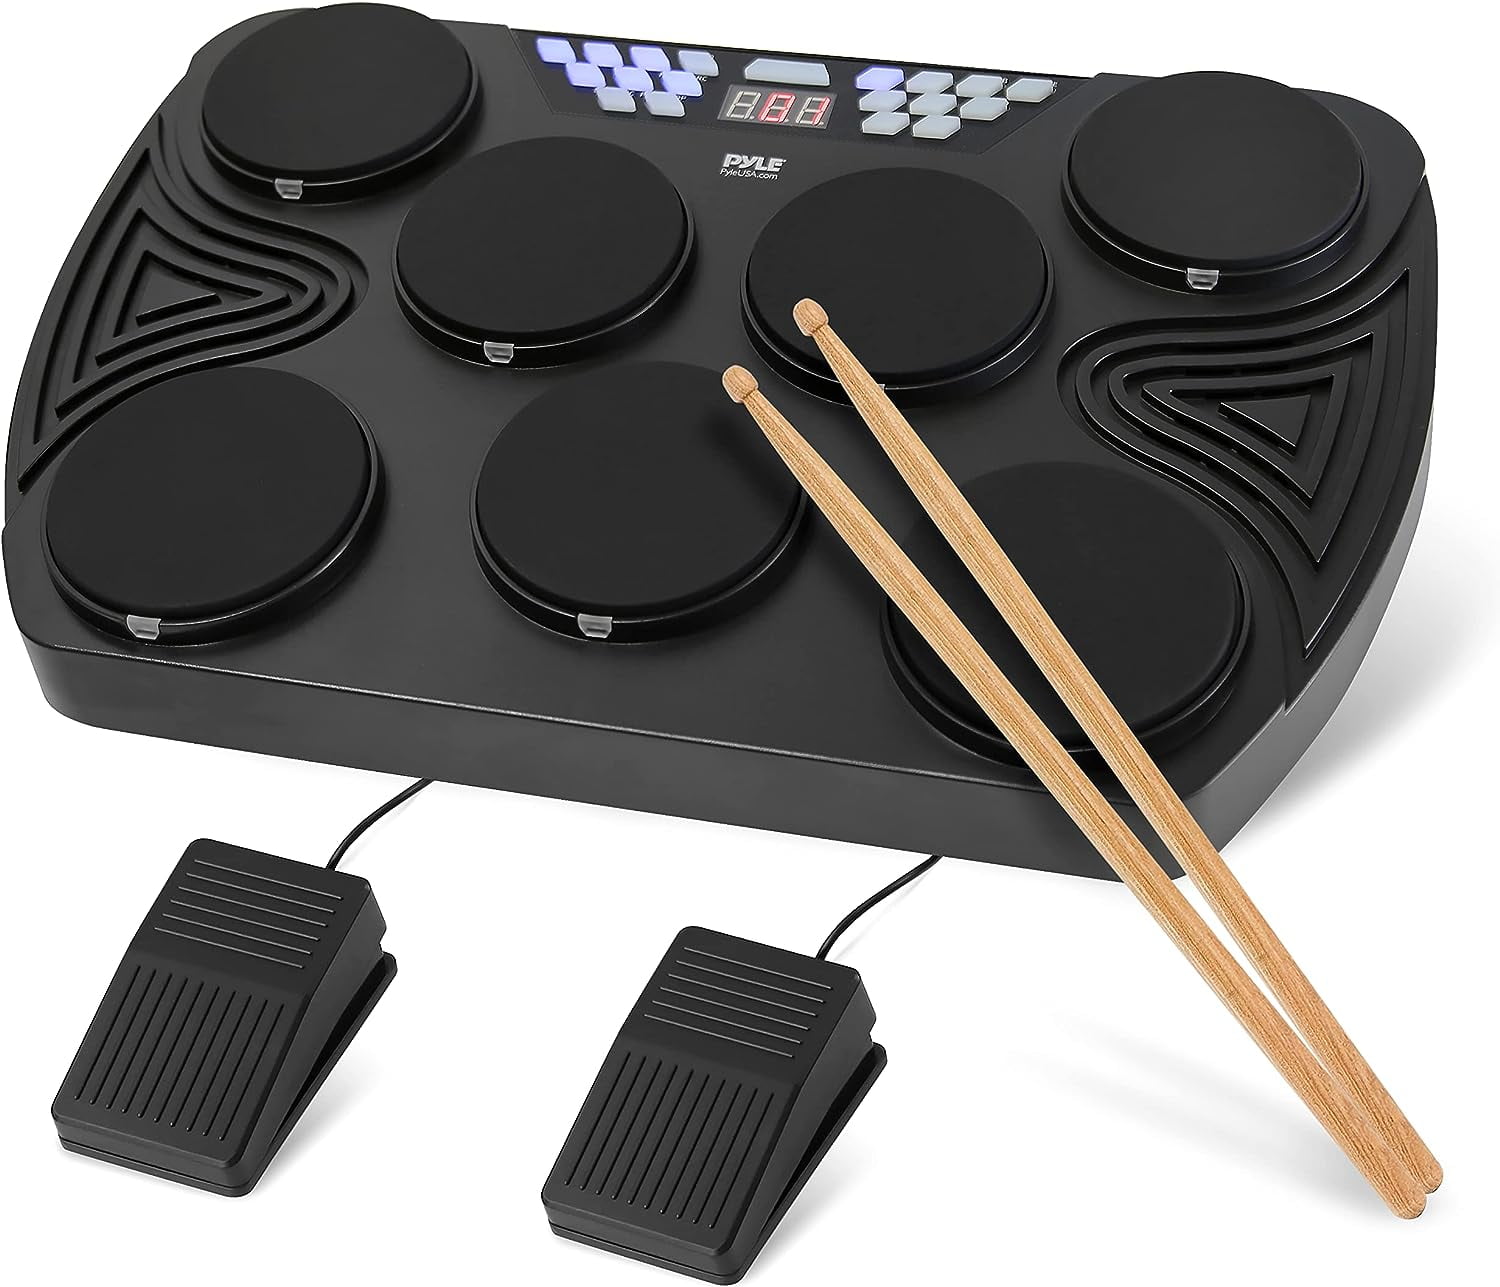 Pyle Electronic Tabletop Drum Machine - Digital Drumming Kit